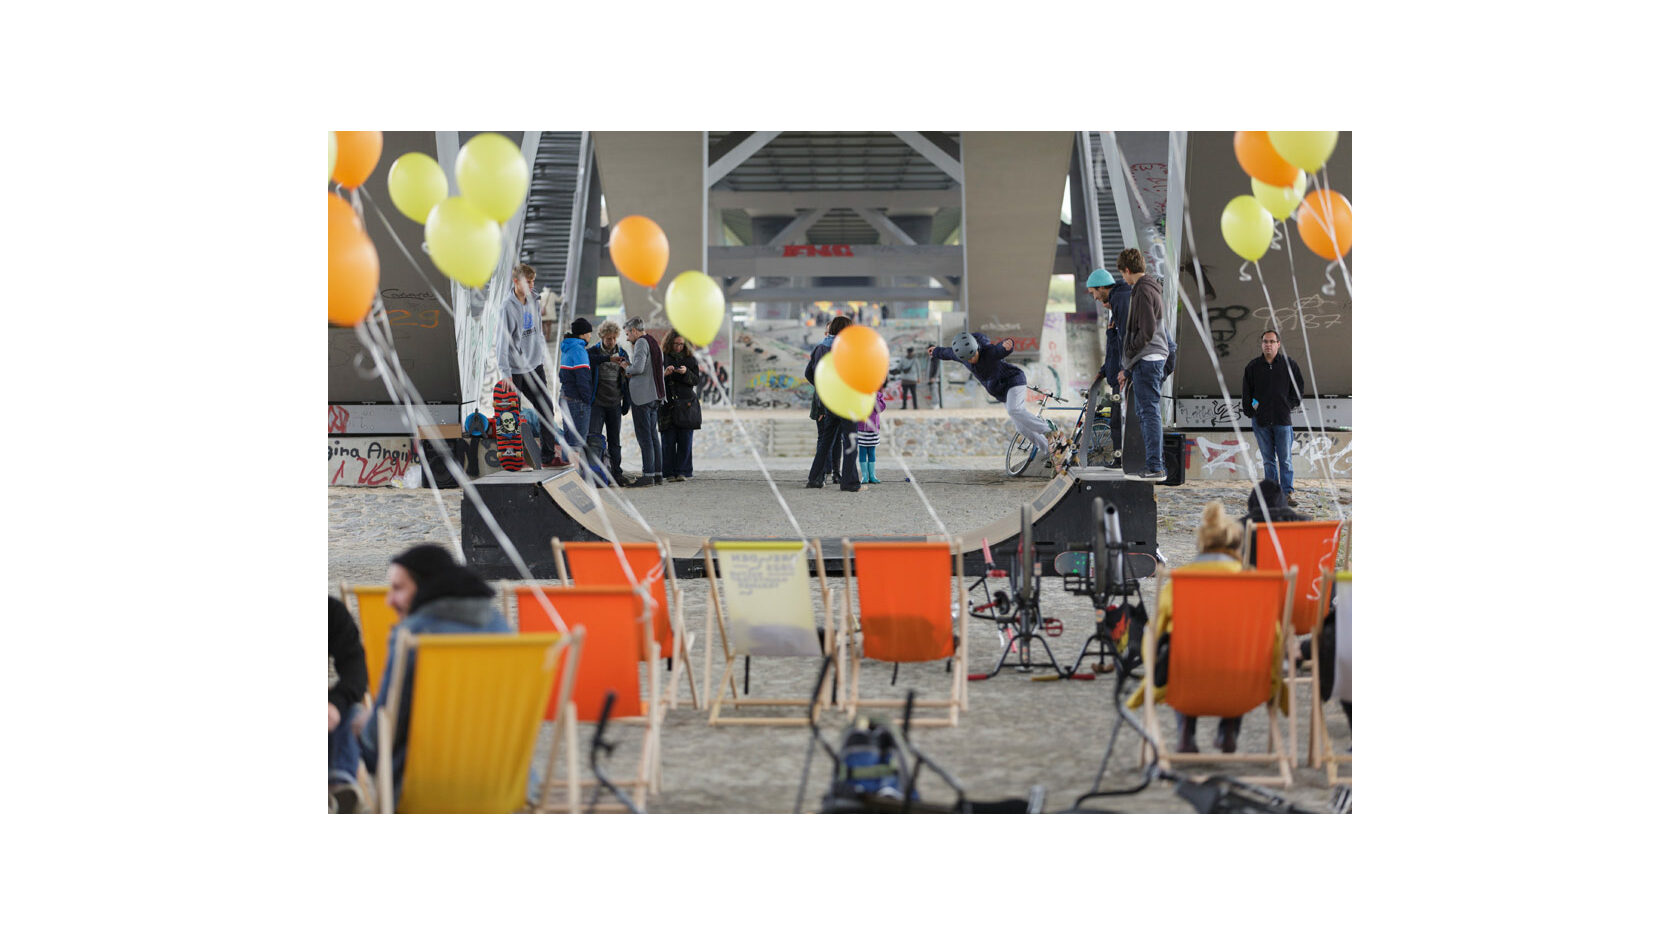 Blick auf eine Minirampe unterhalb der Waldschlösschenbrücke, auf der junge Skater unterwegs sind. Im Vordergrund stehen zahlreiche gelbe und orangene Liegestühle, an denen Luftballons befestigt sind.